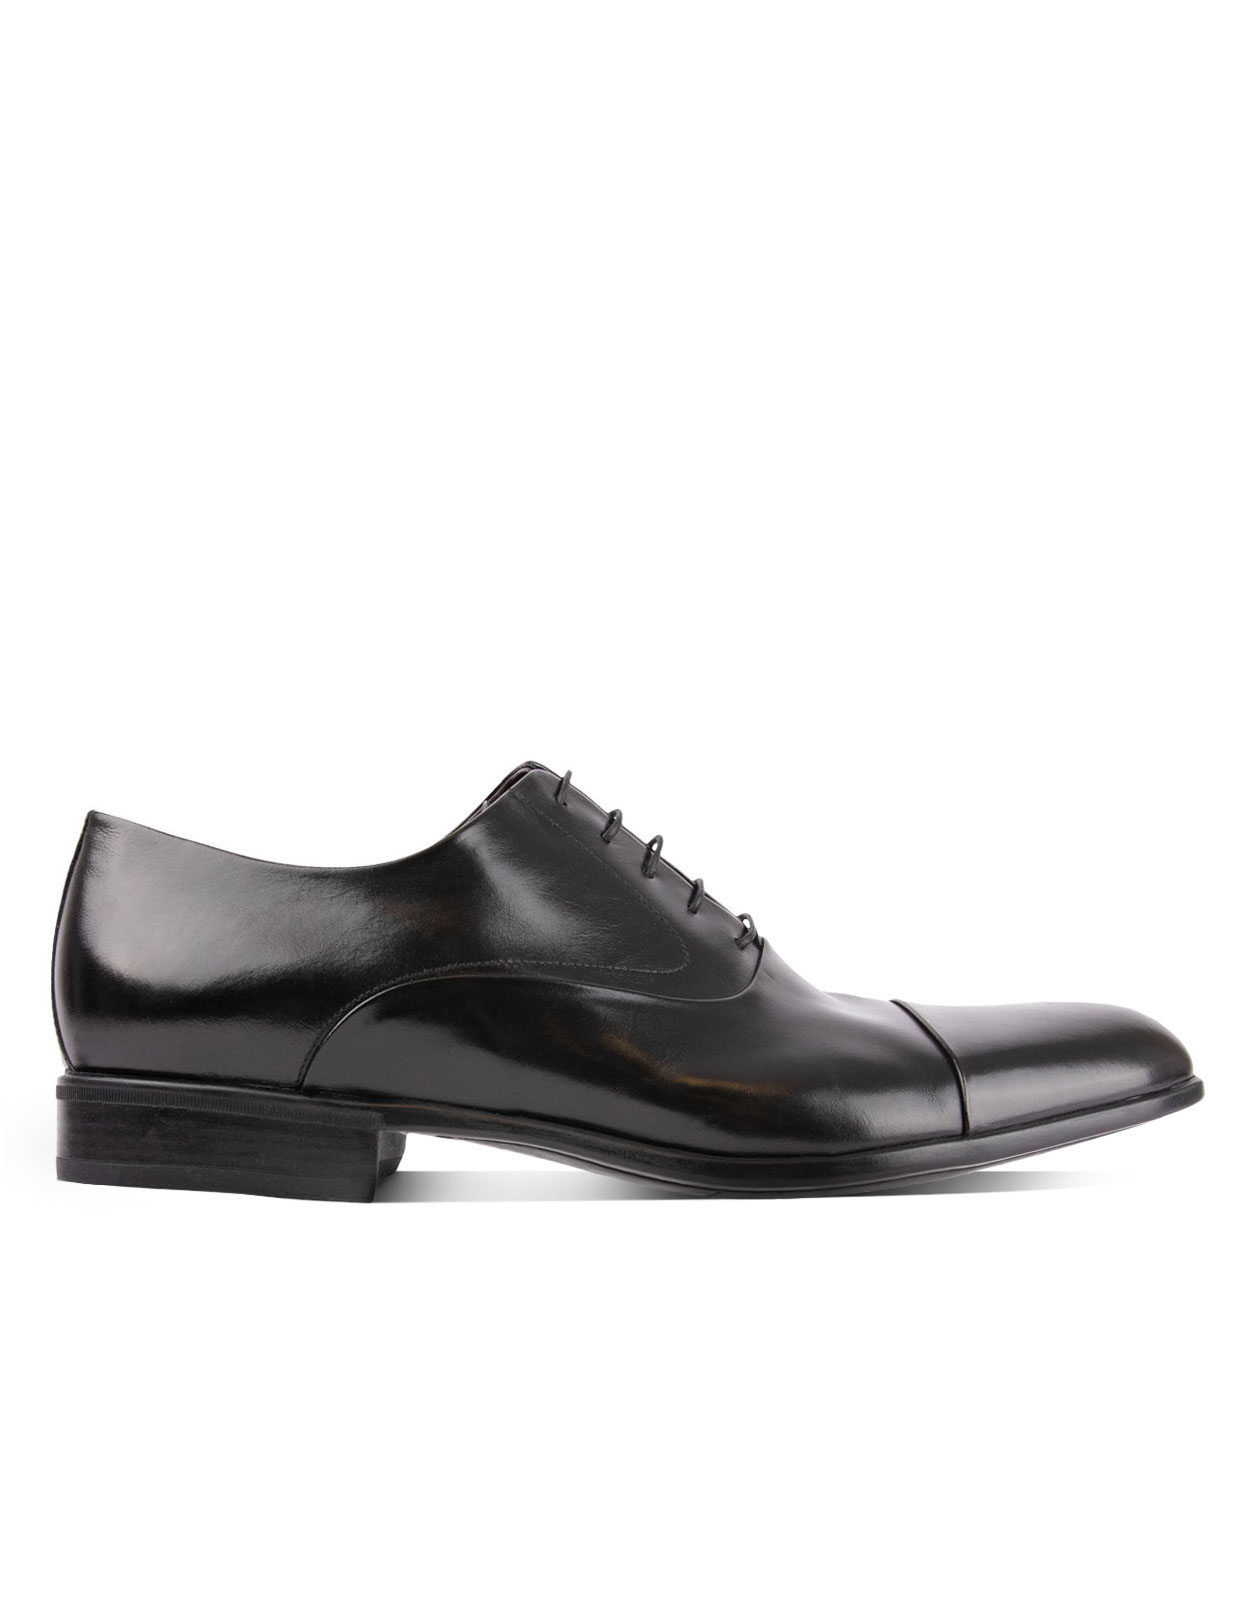 Bruges Oxford Shoe Black Stl 8.5